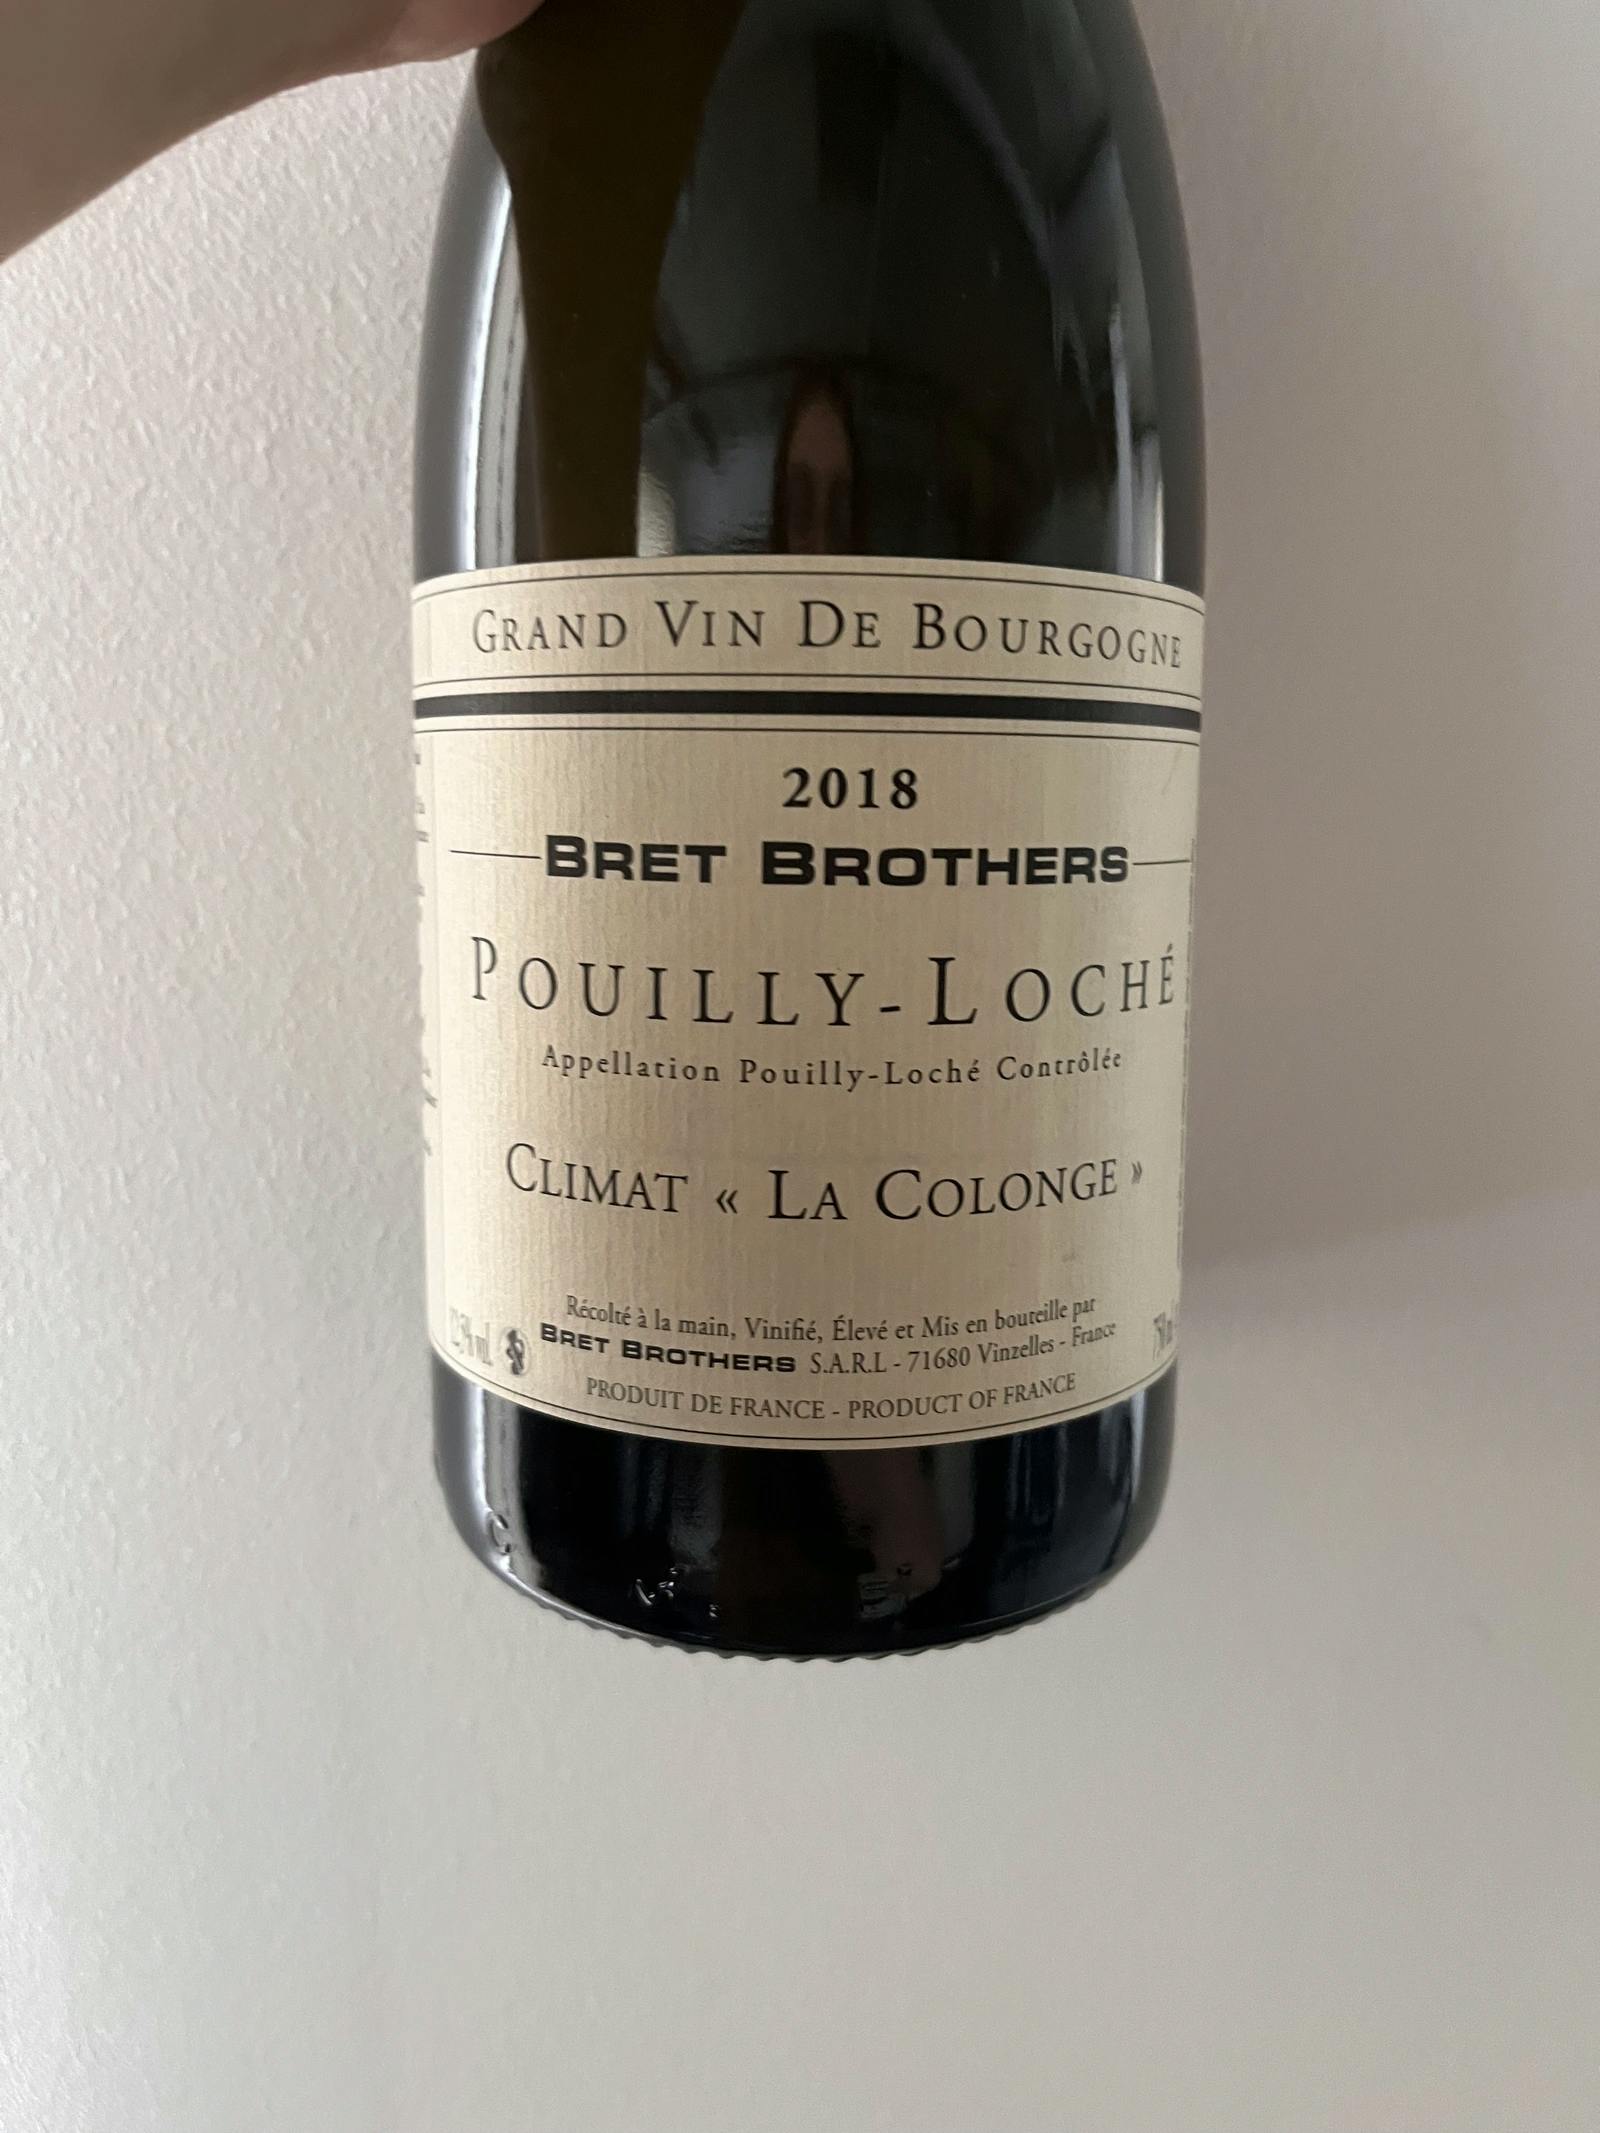 Bret Brothers Pouilly-Loché Climat La Colonge 2018